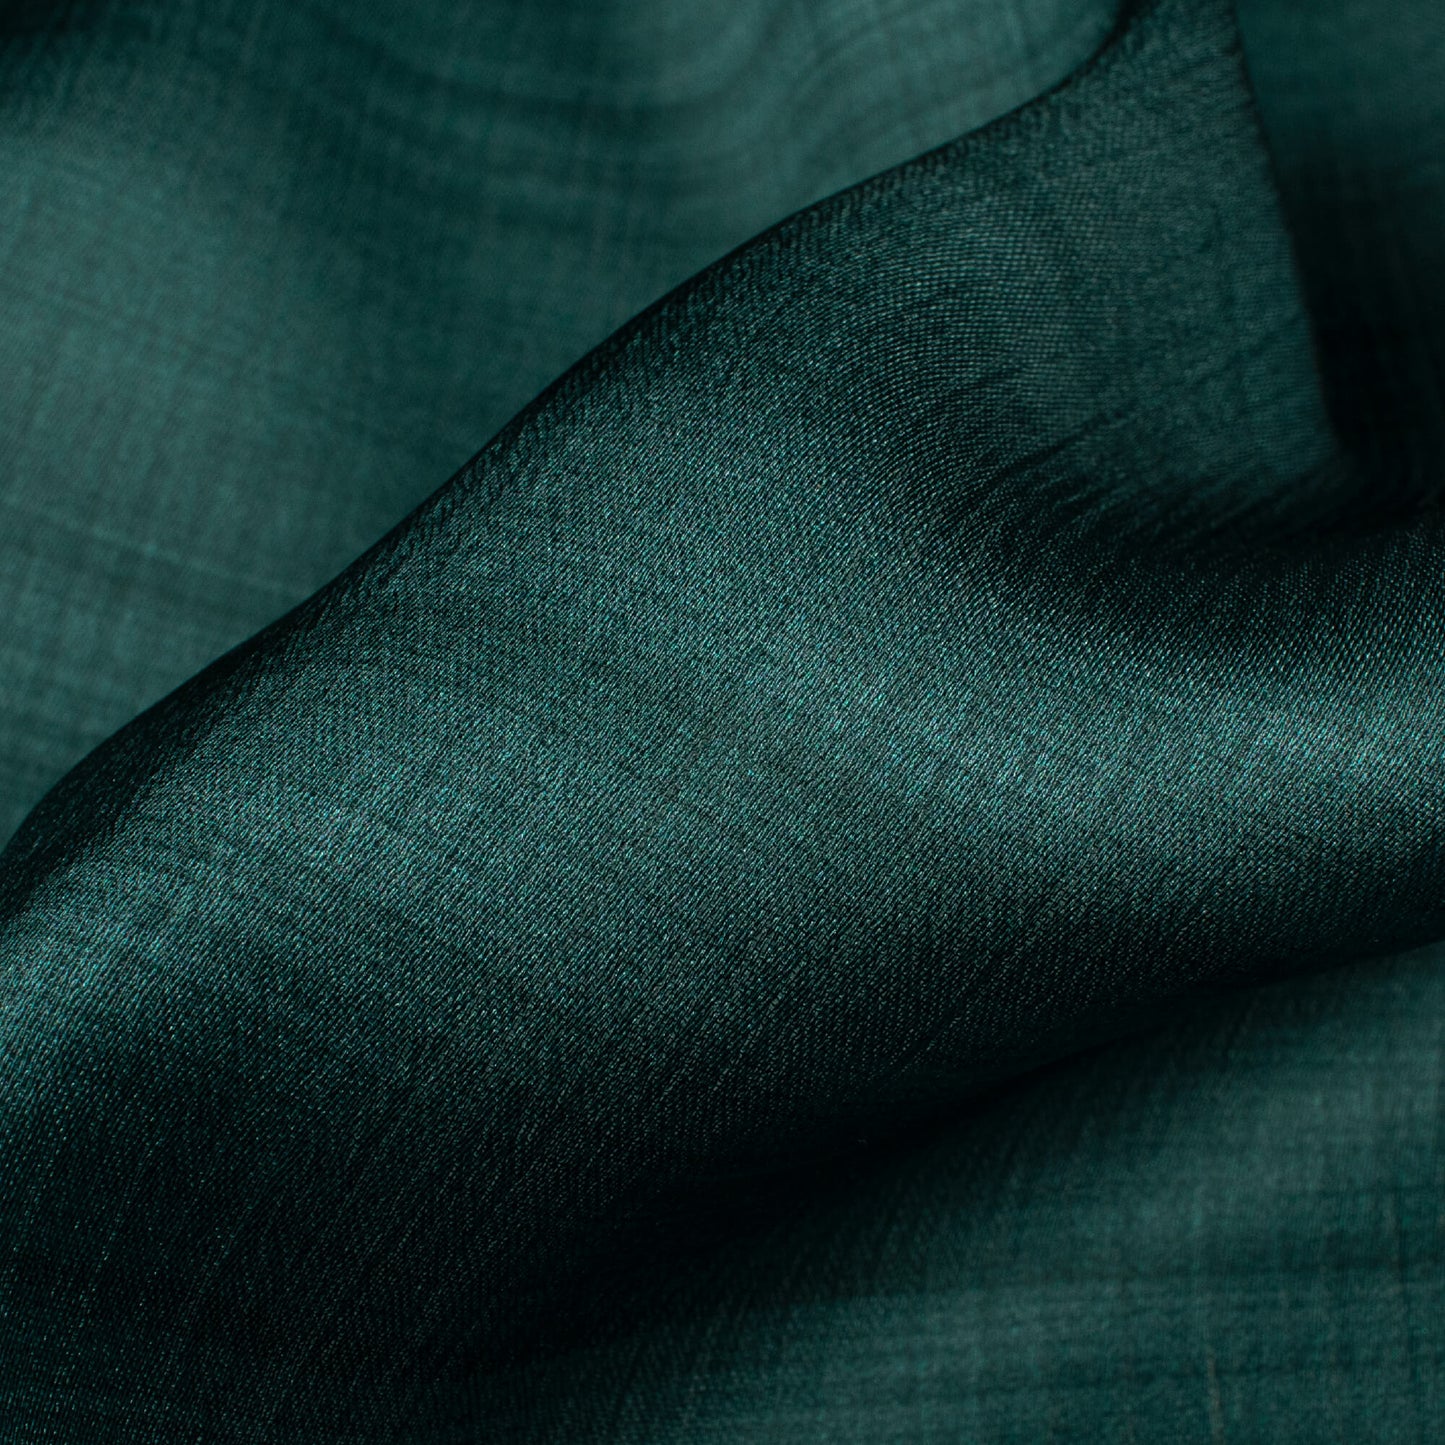 Pine Green Texture Pattern Digital Print Chiffon Satin Fabric